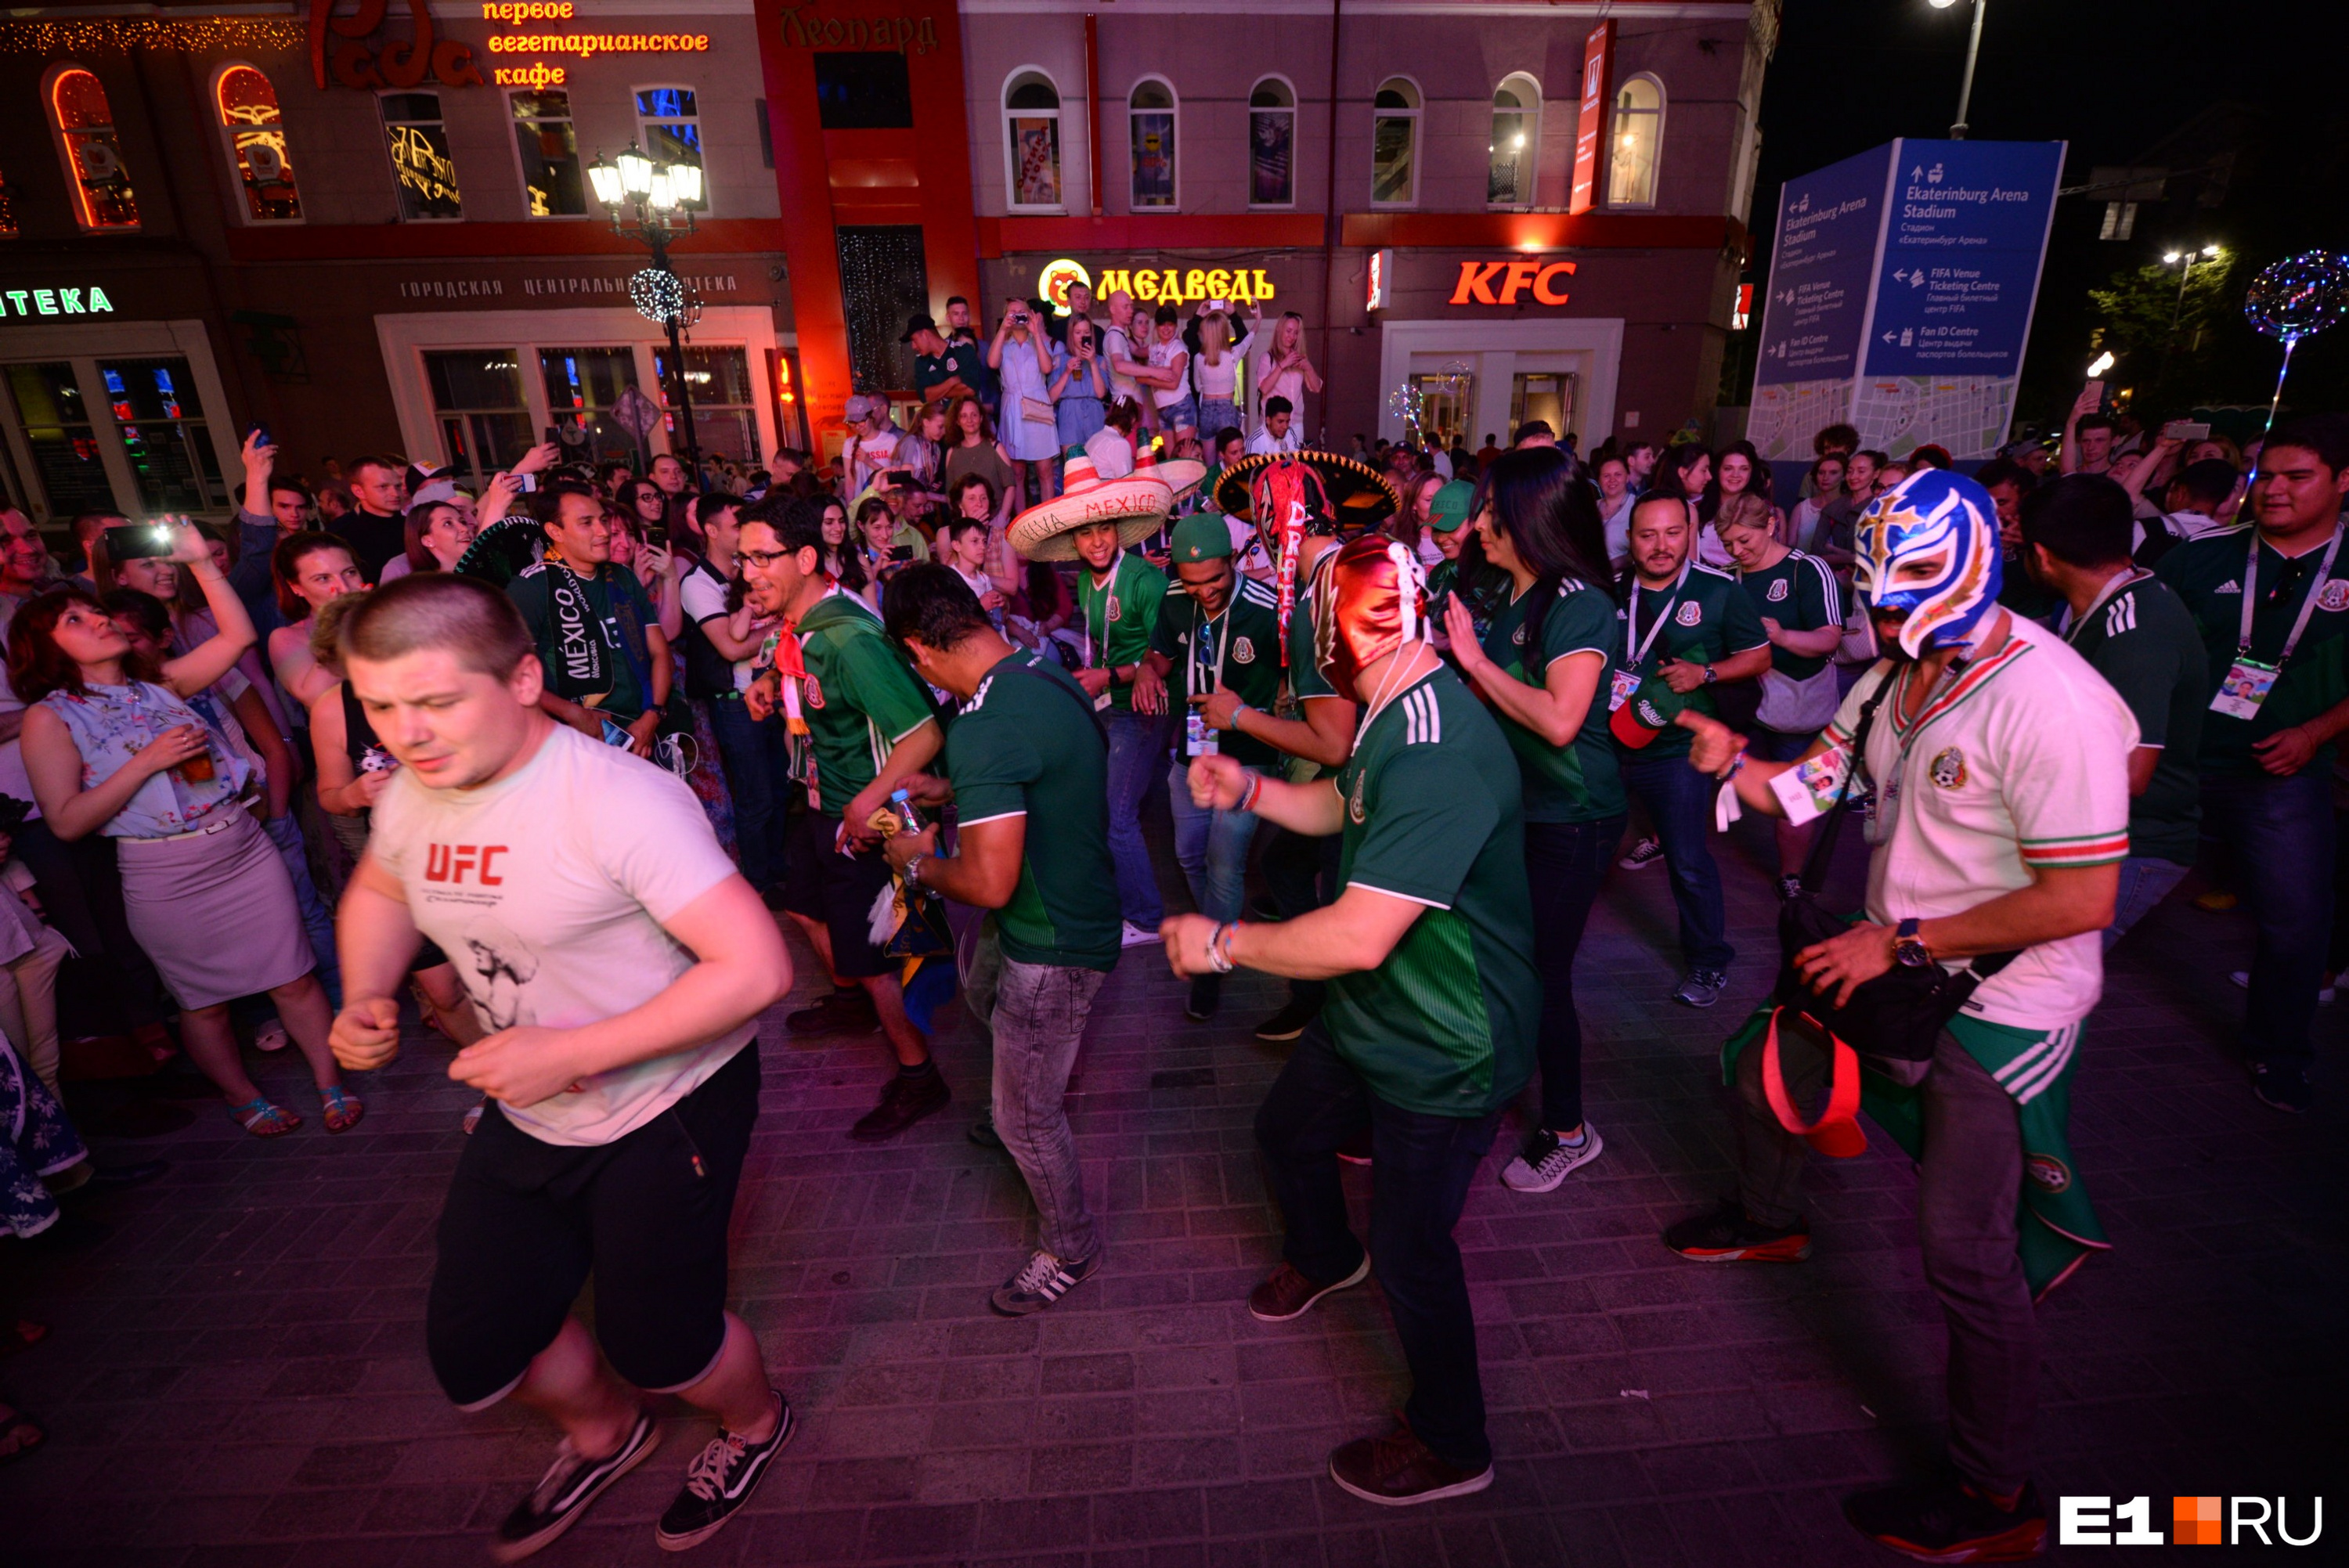 Мексиканцы танцевали в масках своих кумиров — рестлеров